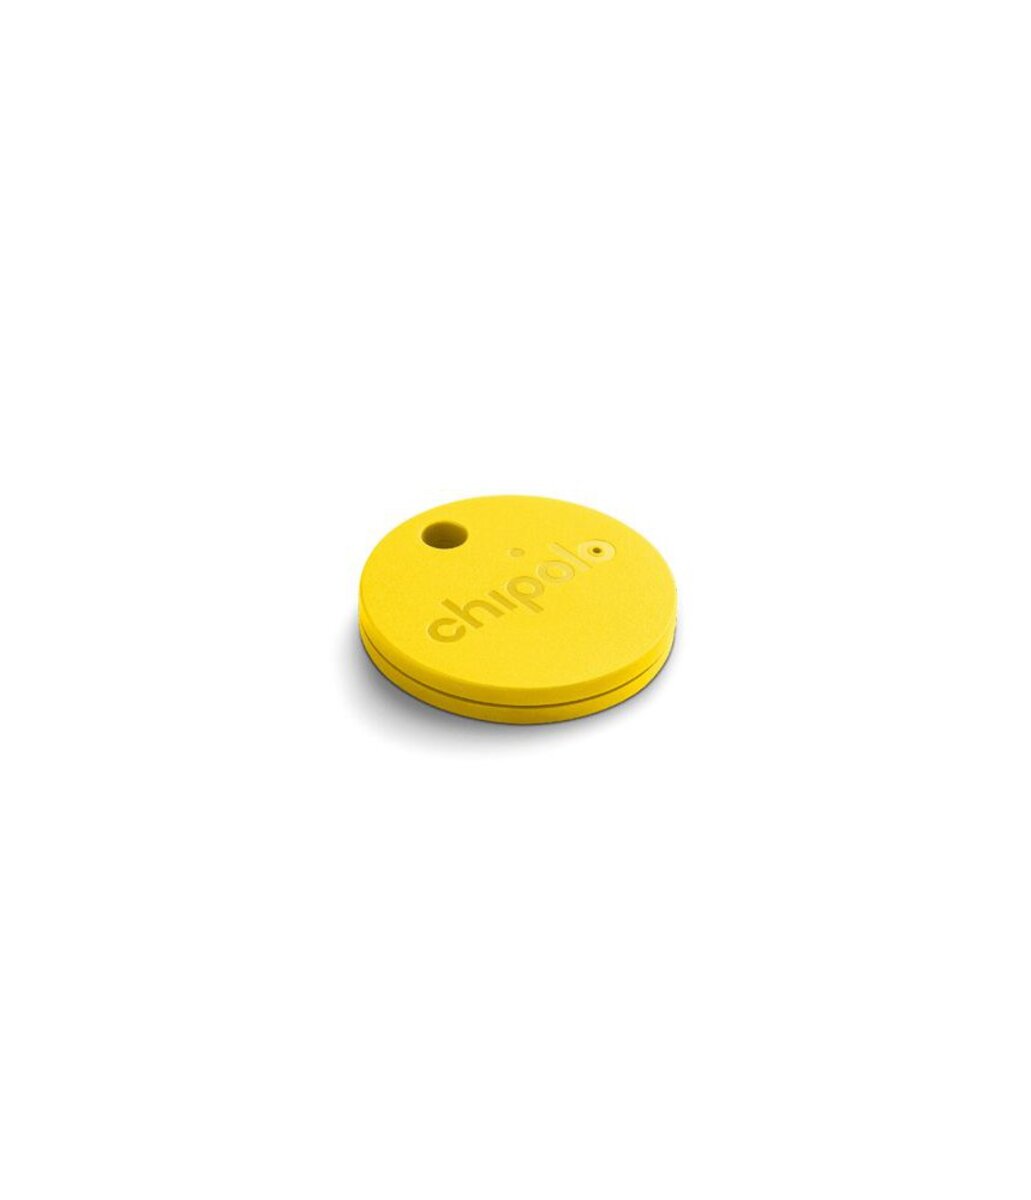 Chipolo CLASSIC porte-clés connecté anti perte Bluetooth GPS - La